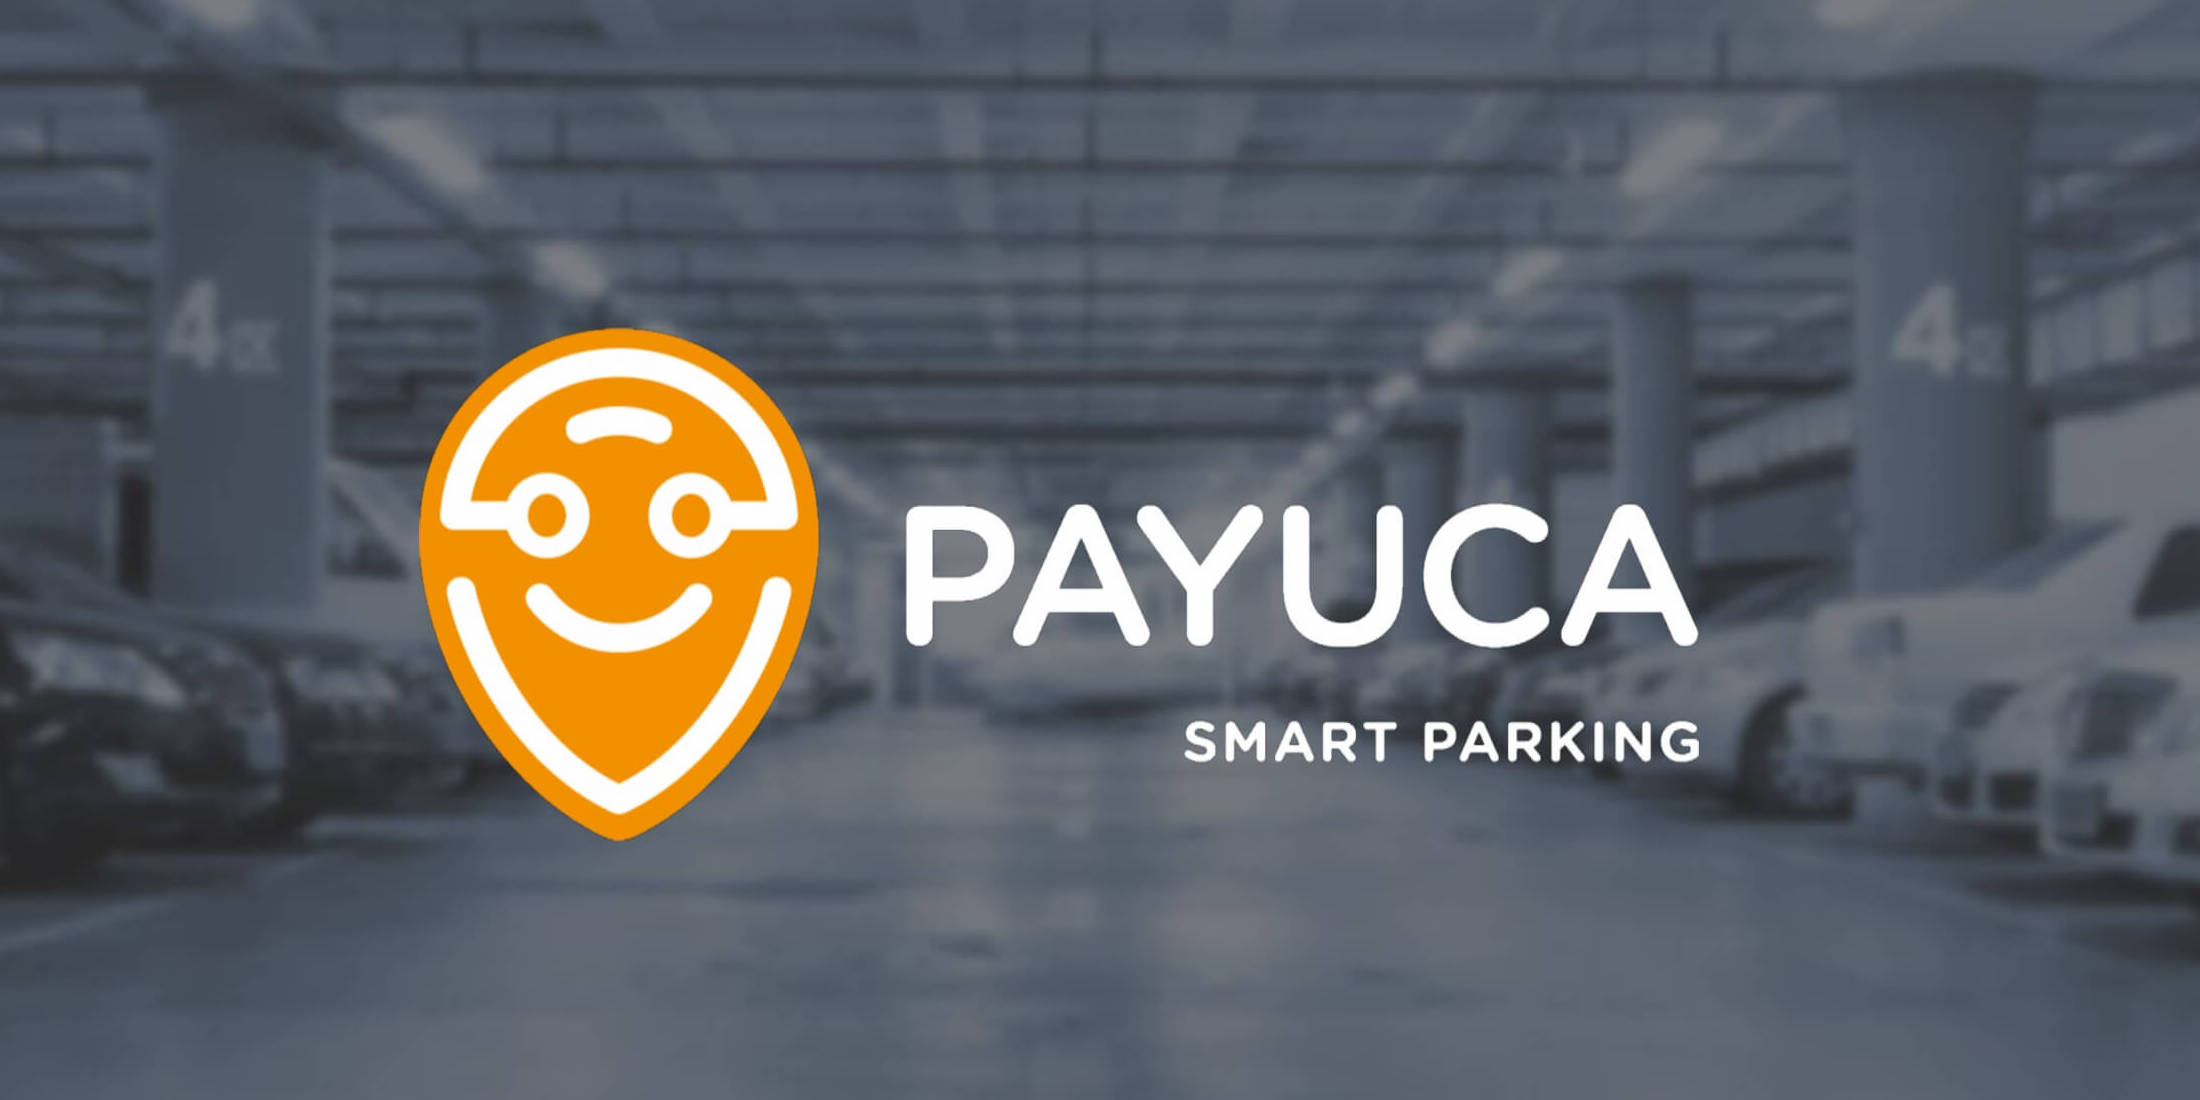 Freie Parkplätze finden mit Payuca